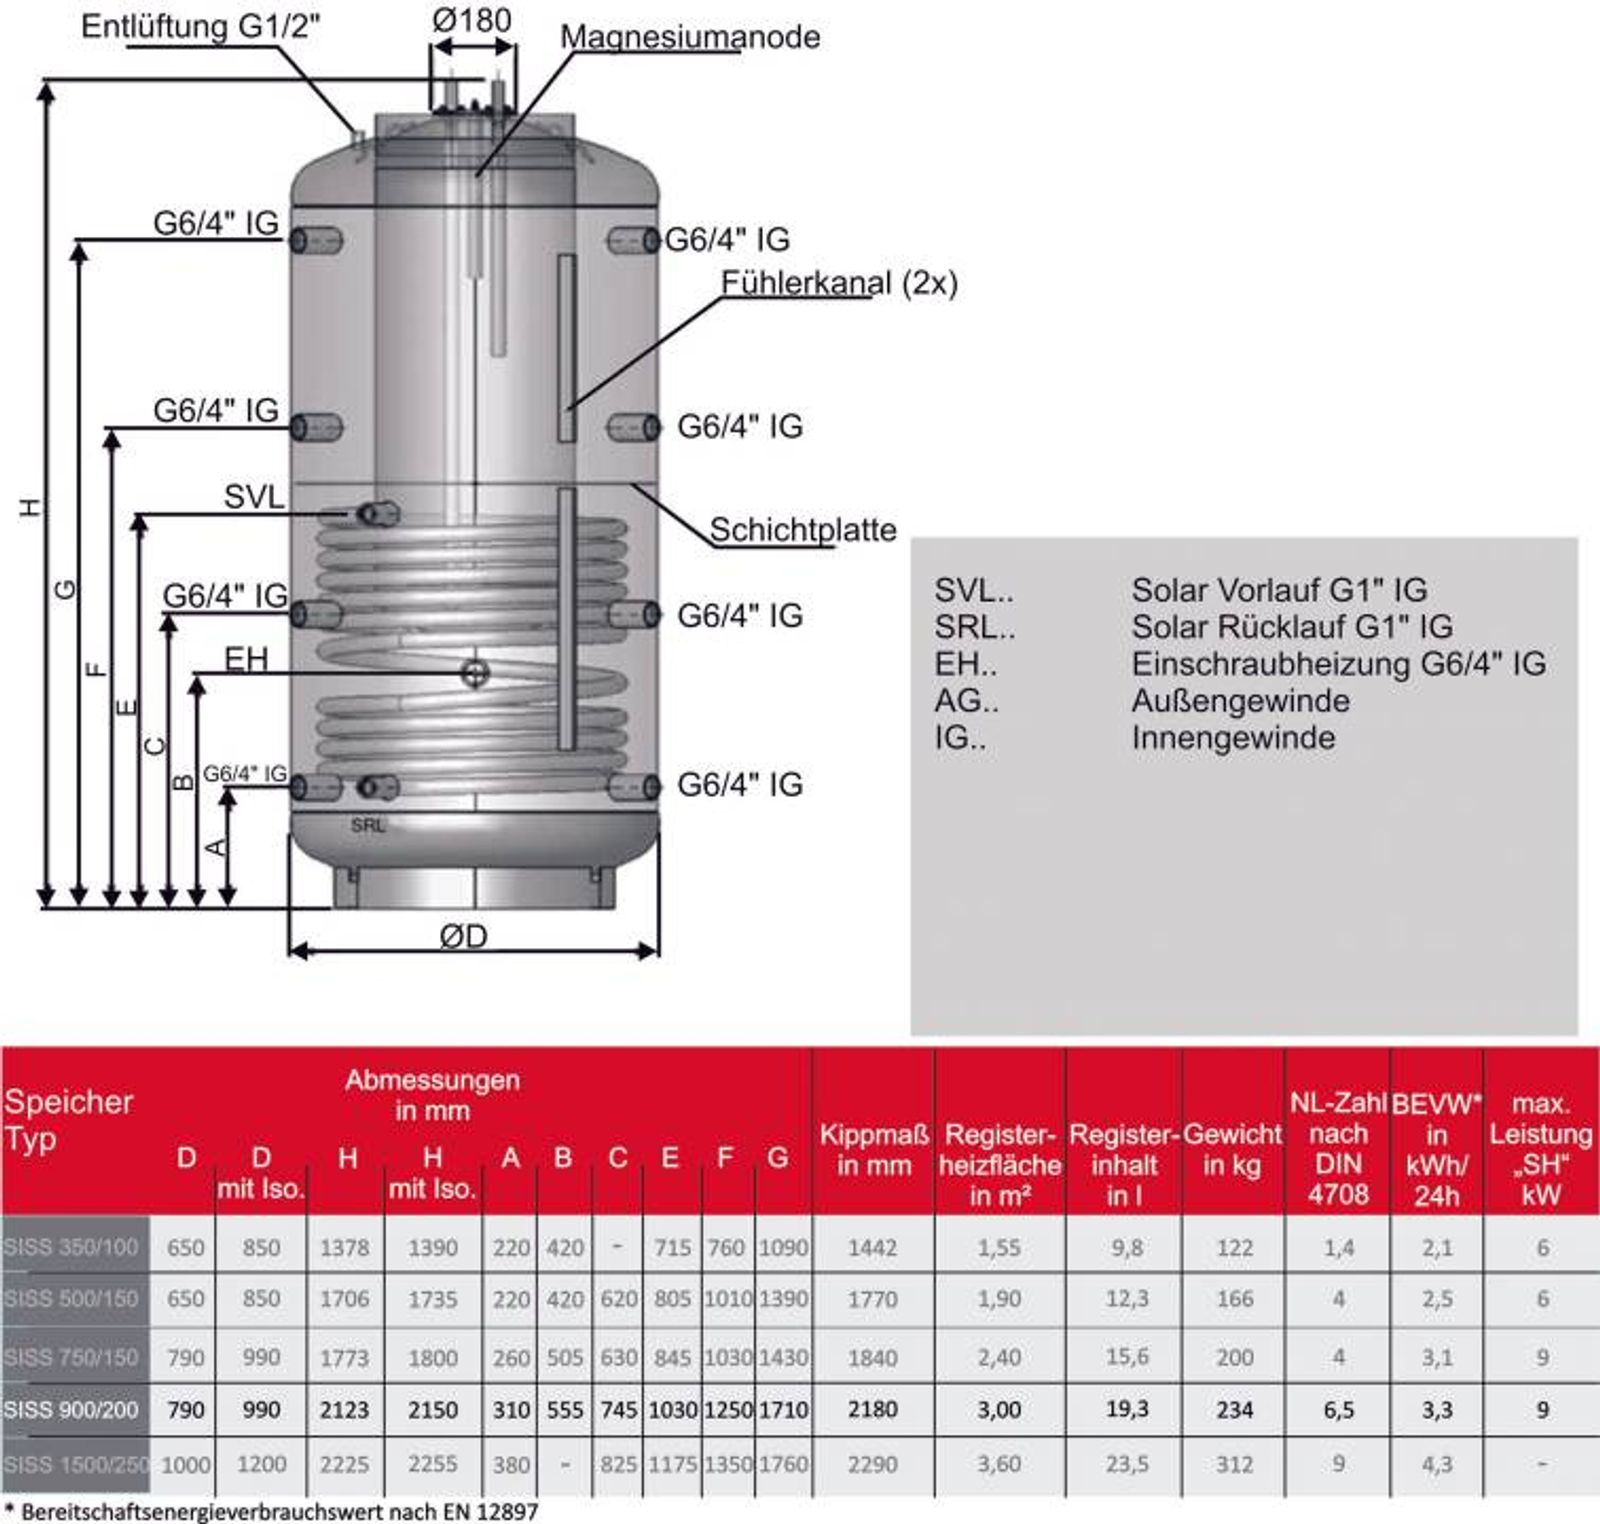 Kombispeicher Speicher im Speicher 900/200 Liter mit 100 mm Isolierung